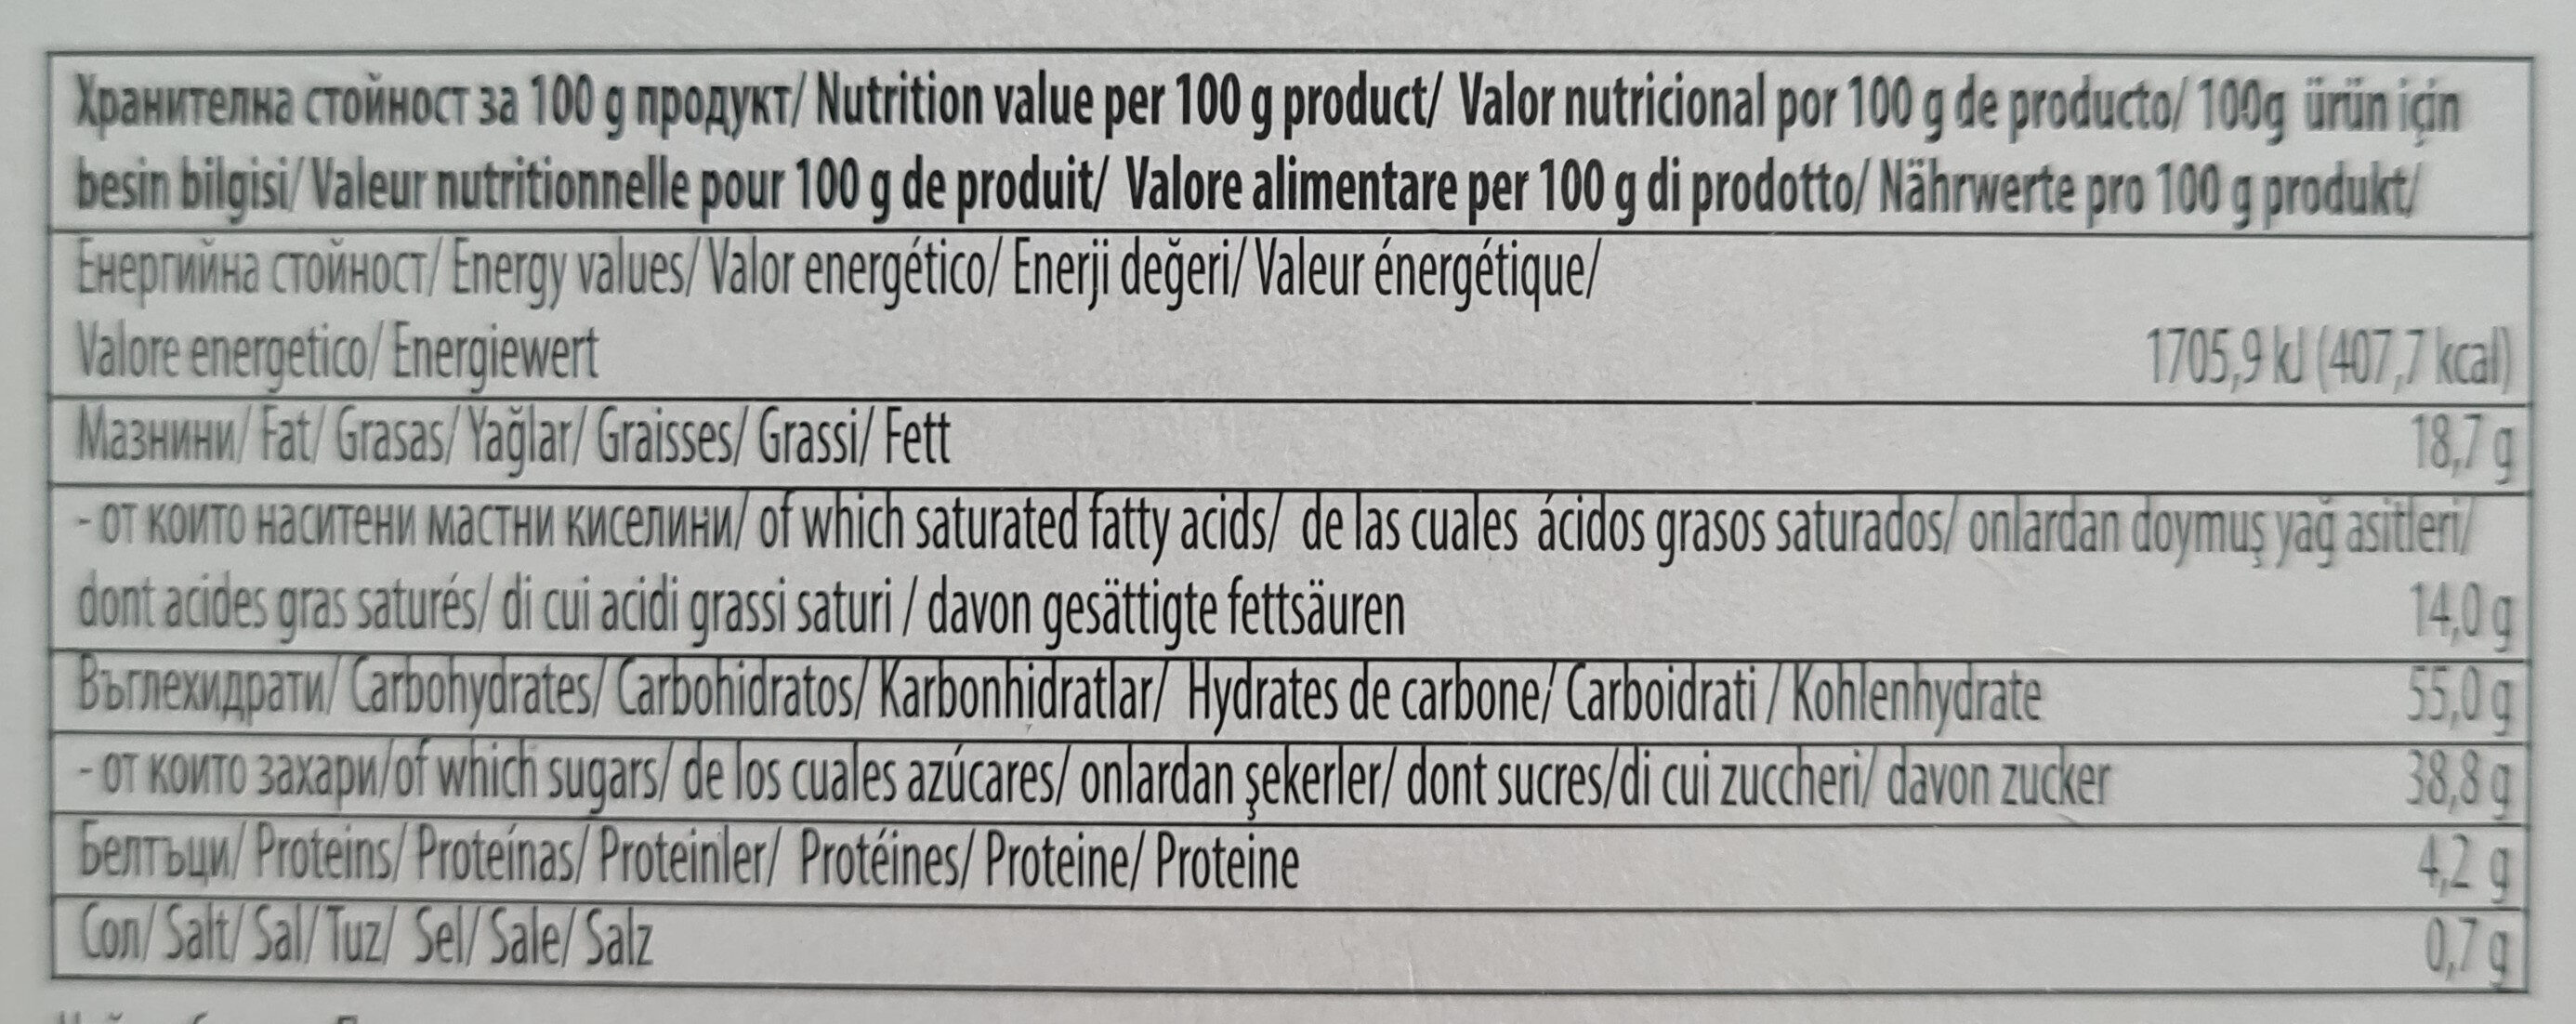 Суха паста с крем ванилия - Хранителни стойности